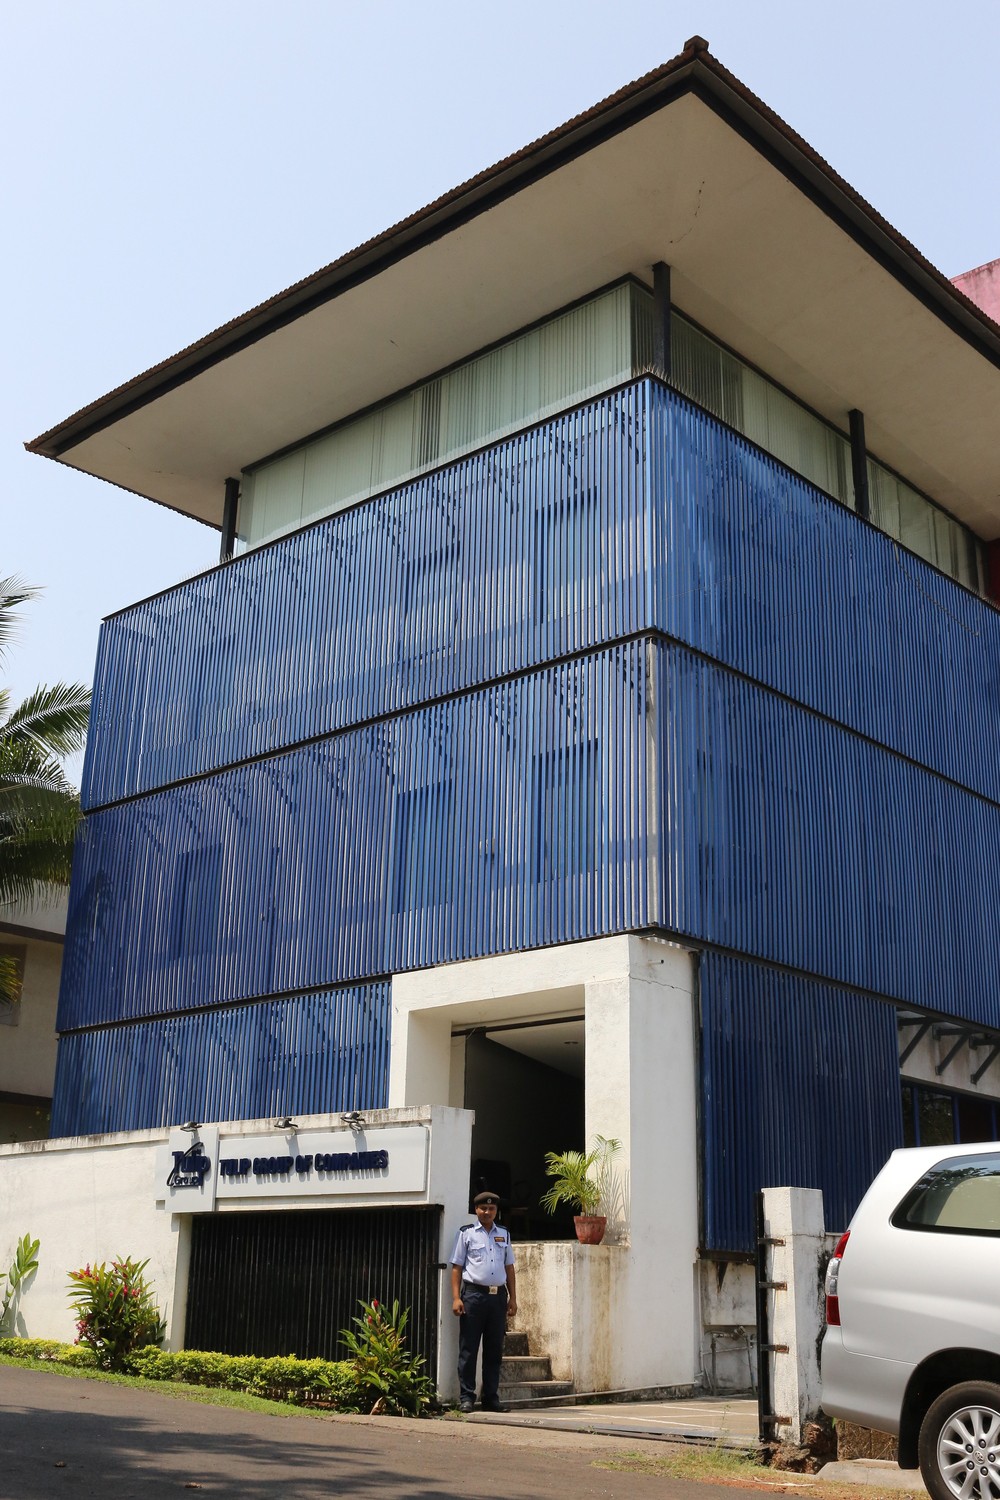 The Tulip HQ building at Bambolim, Goa